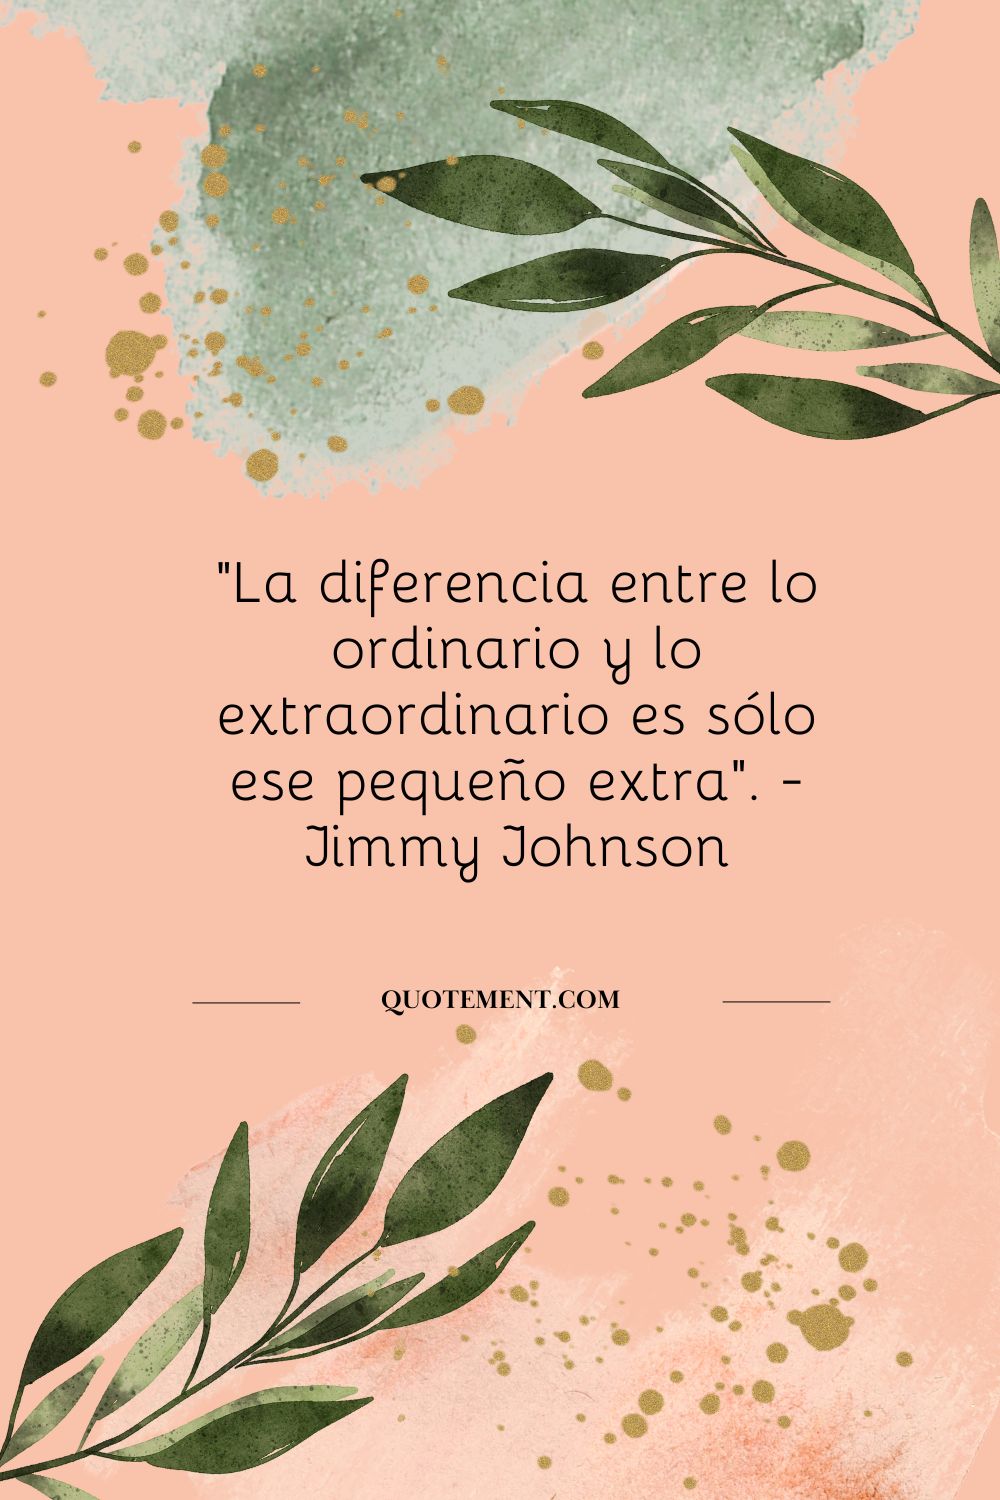 "La diferencia entre lo ordinario y lo extraordinario es ese pequeño extra". - Jimmy Johnson